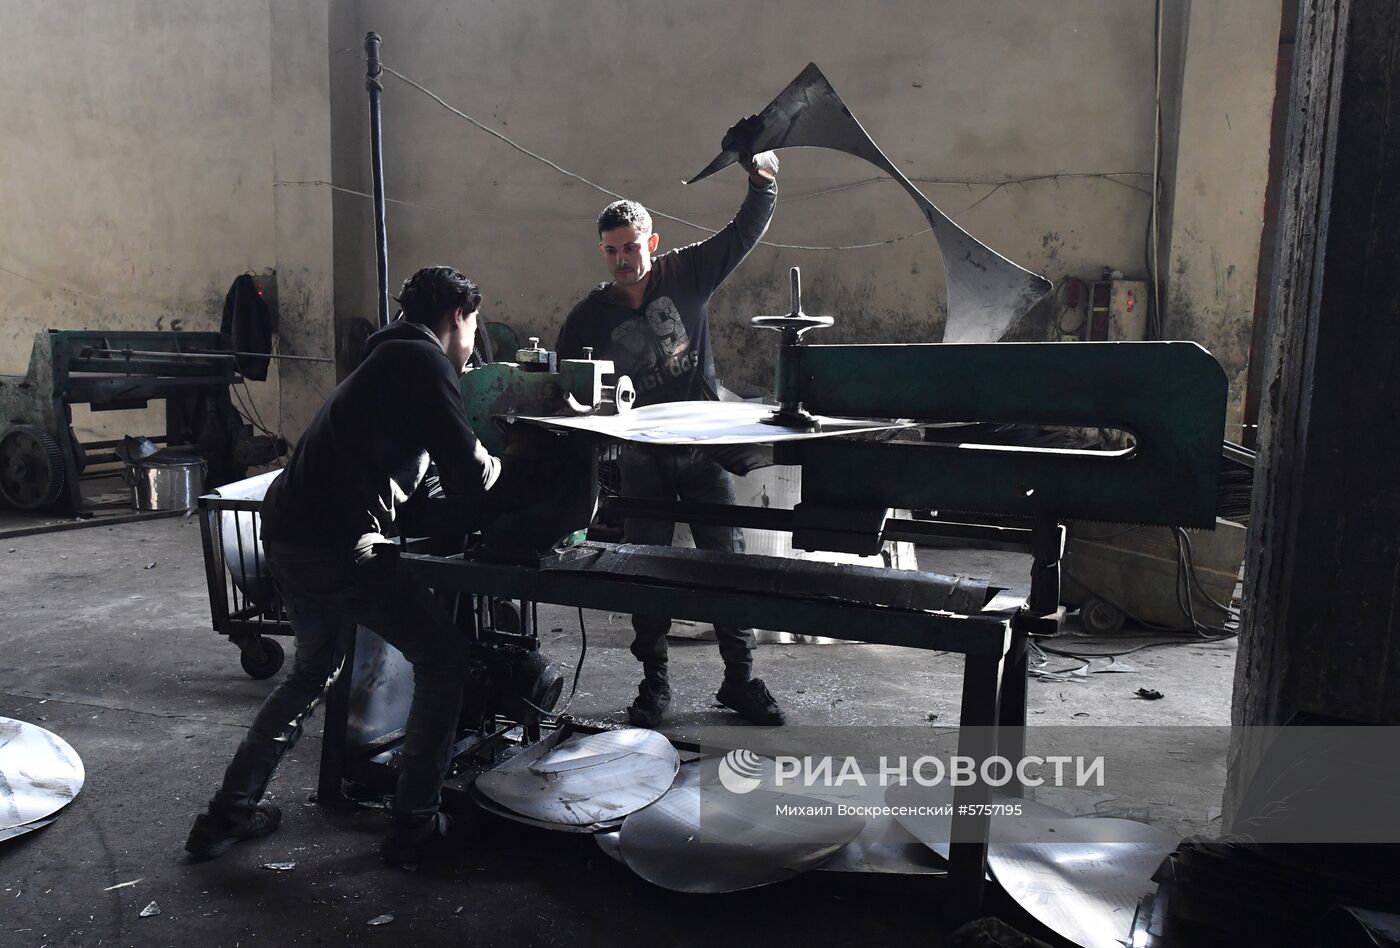 Частный алюминиевый завод в пригороде Хомса